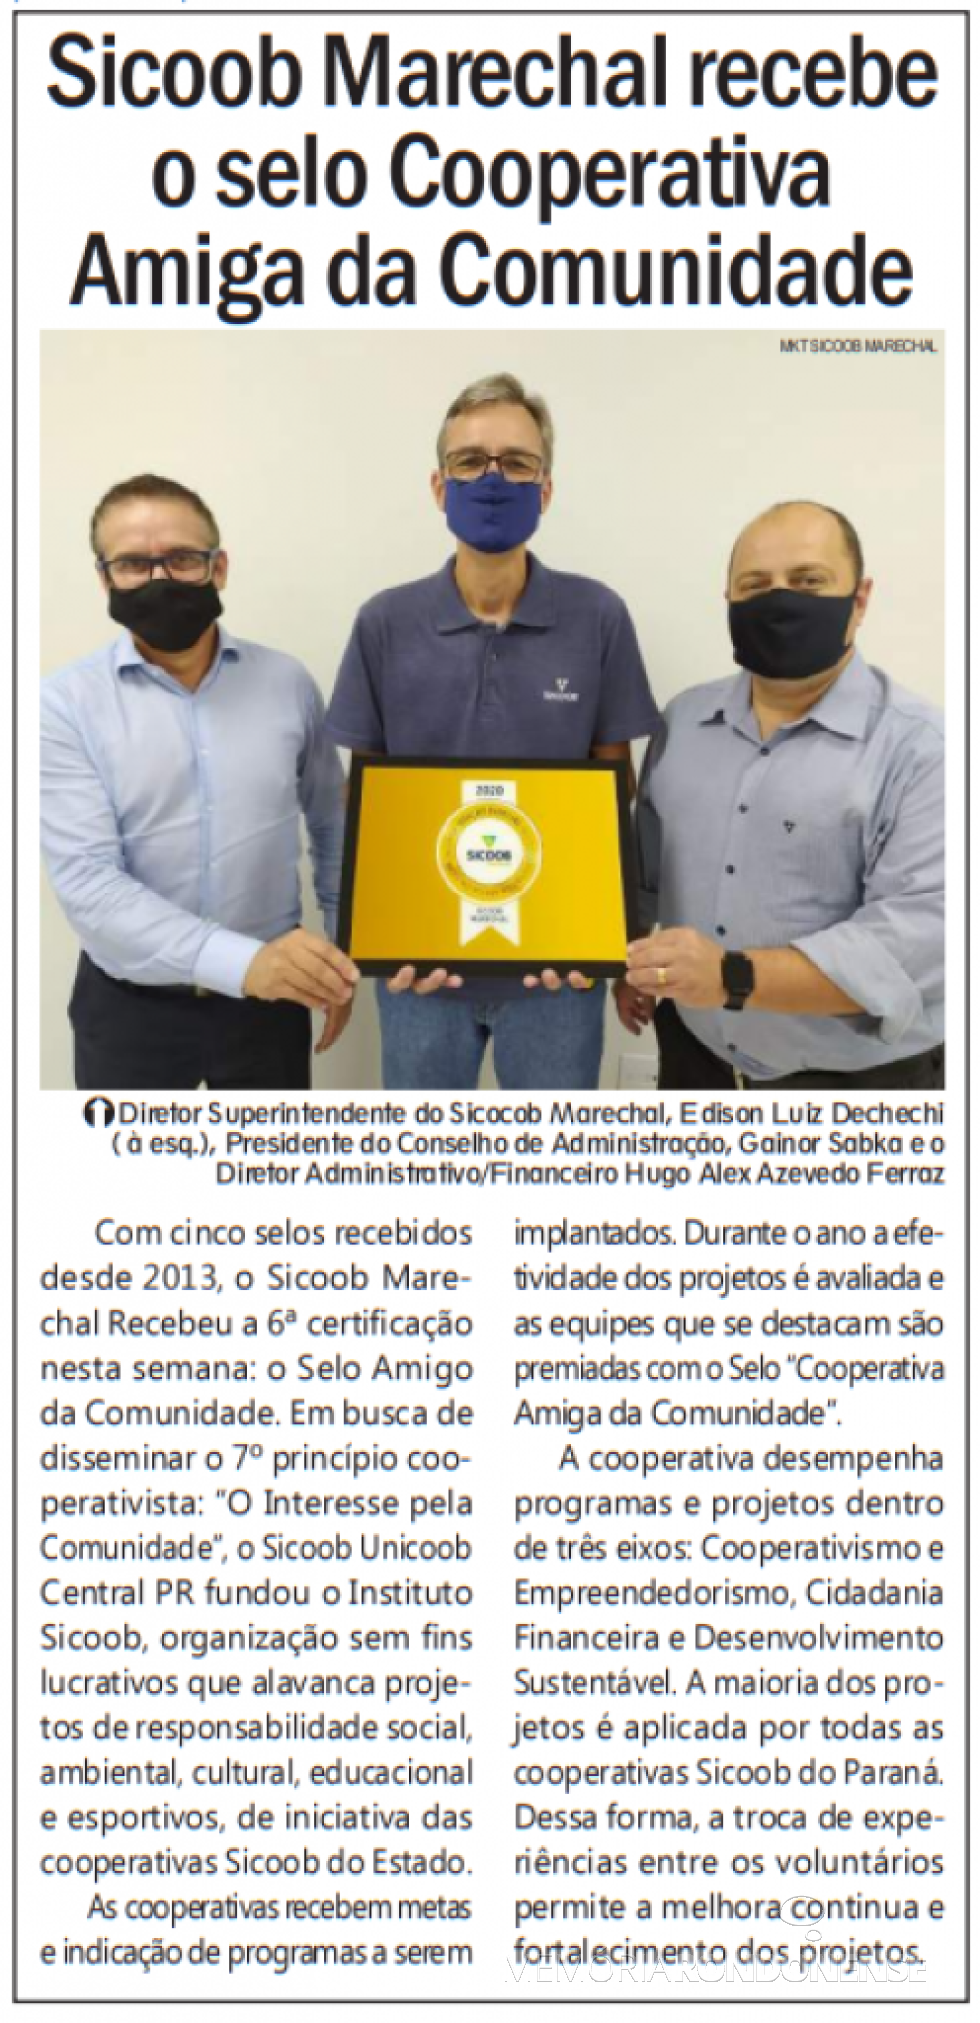 || Destaque do jornal rondonense Tribuna do Oeste sobre o selo Cooperativa Amiga da Comunidade concedido ao SIcoob Marechal,  em janeiro de 2021.
Imagem: Acervo do periódico - FOTO 40 - 